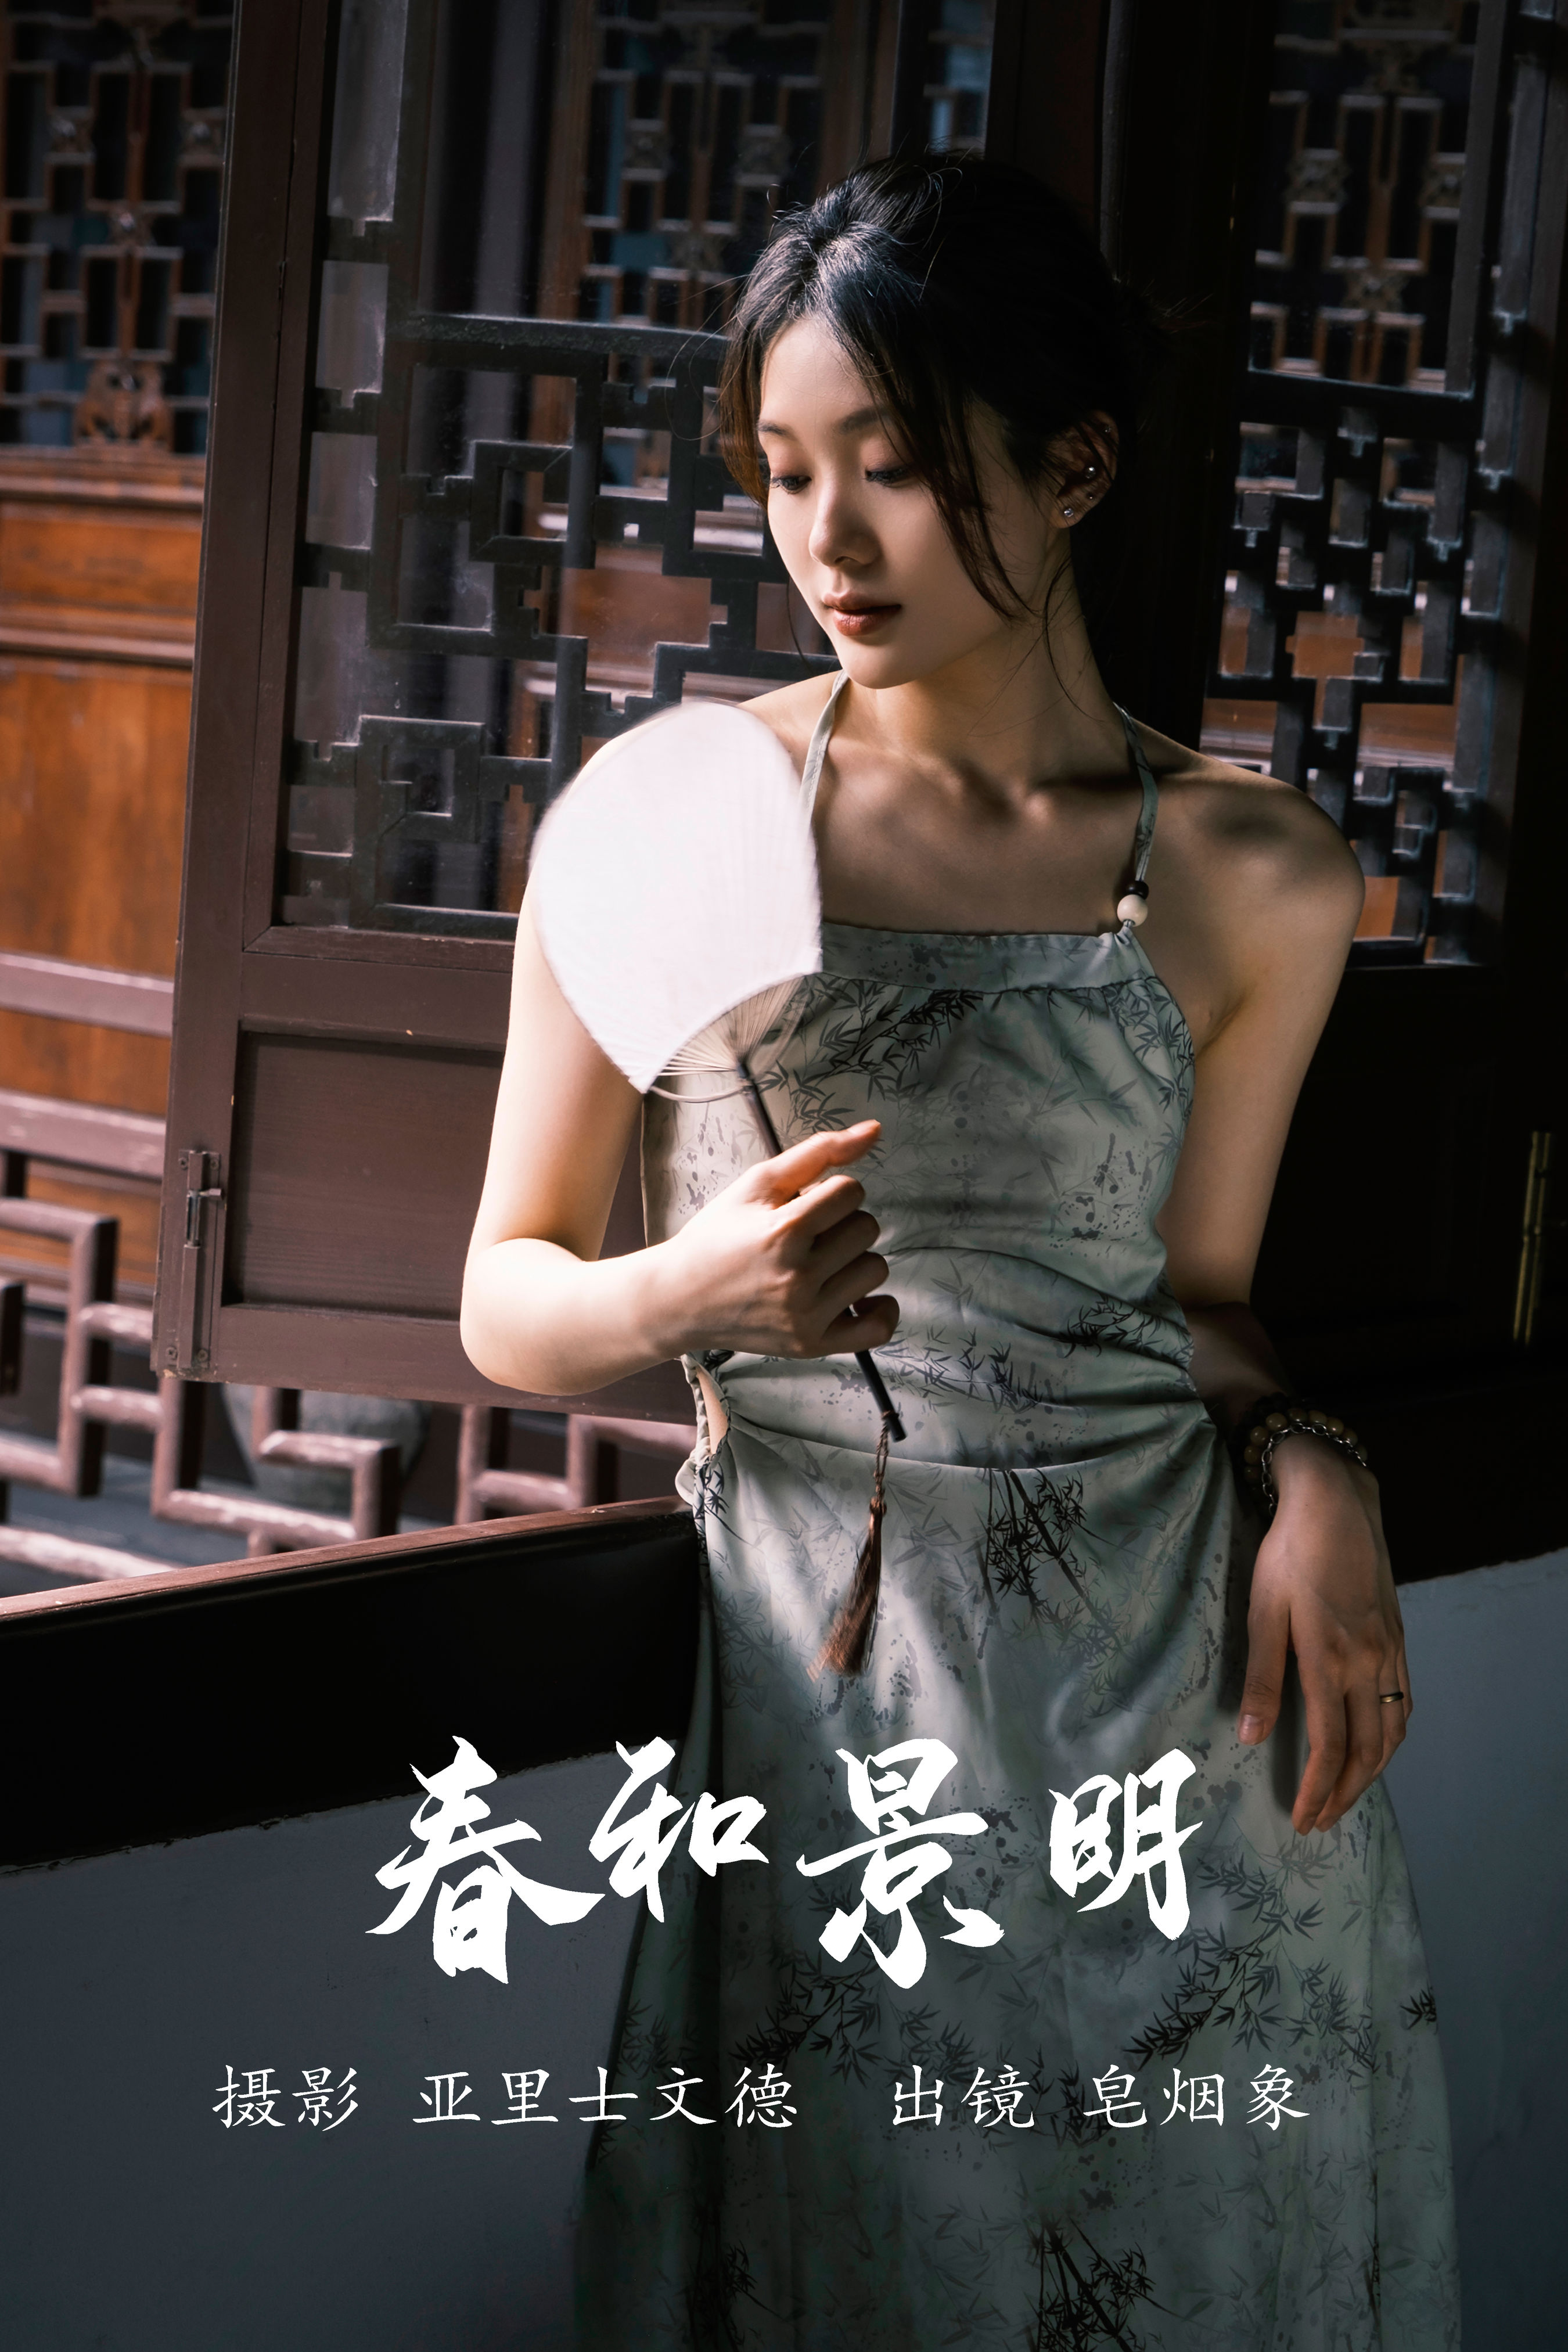 春和景明 古典 中国风 人像 摄影 女人 唯美